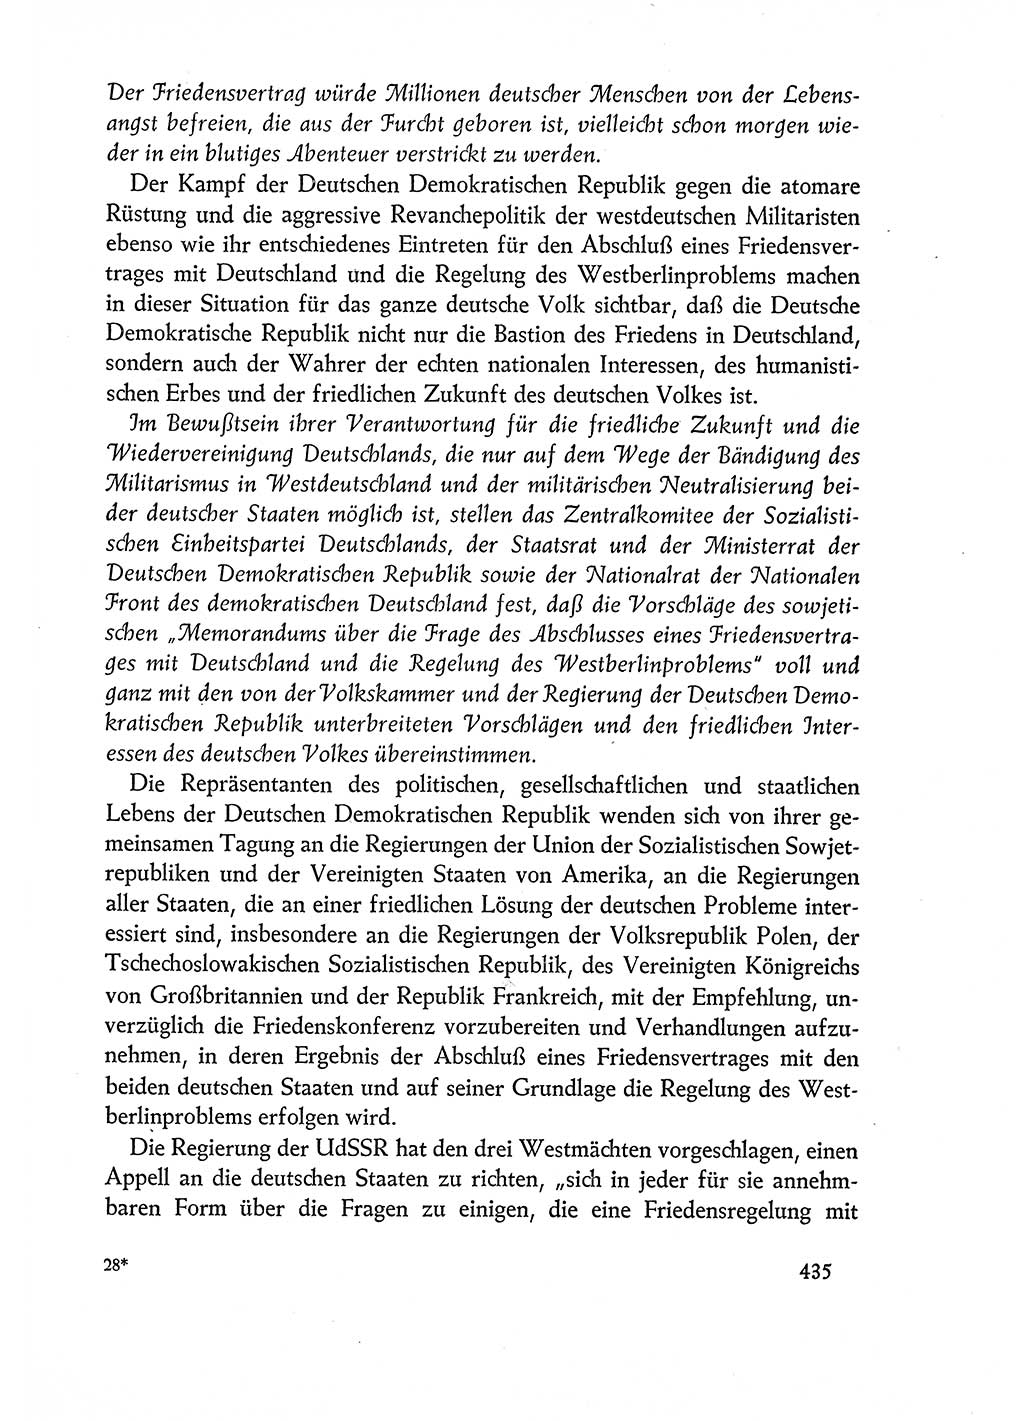 Dokumente der Sozialistischen Einheitspartei Deutschlands (SED) [Deutsche Demokratische Republik (DDR)] 1960-1961, Seite 435 (Dok. SED DDR 1960-1961, S. 435)